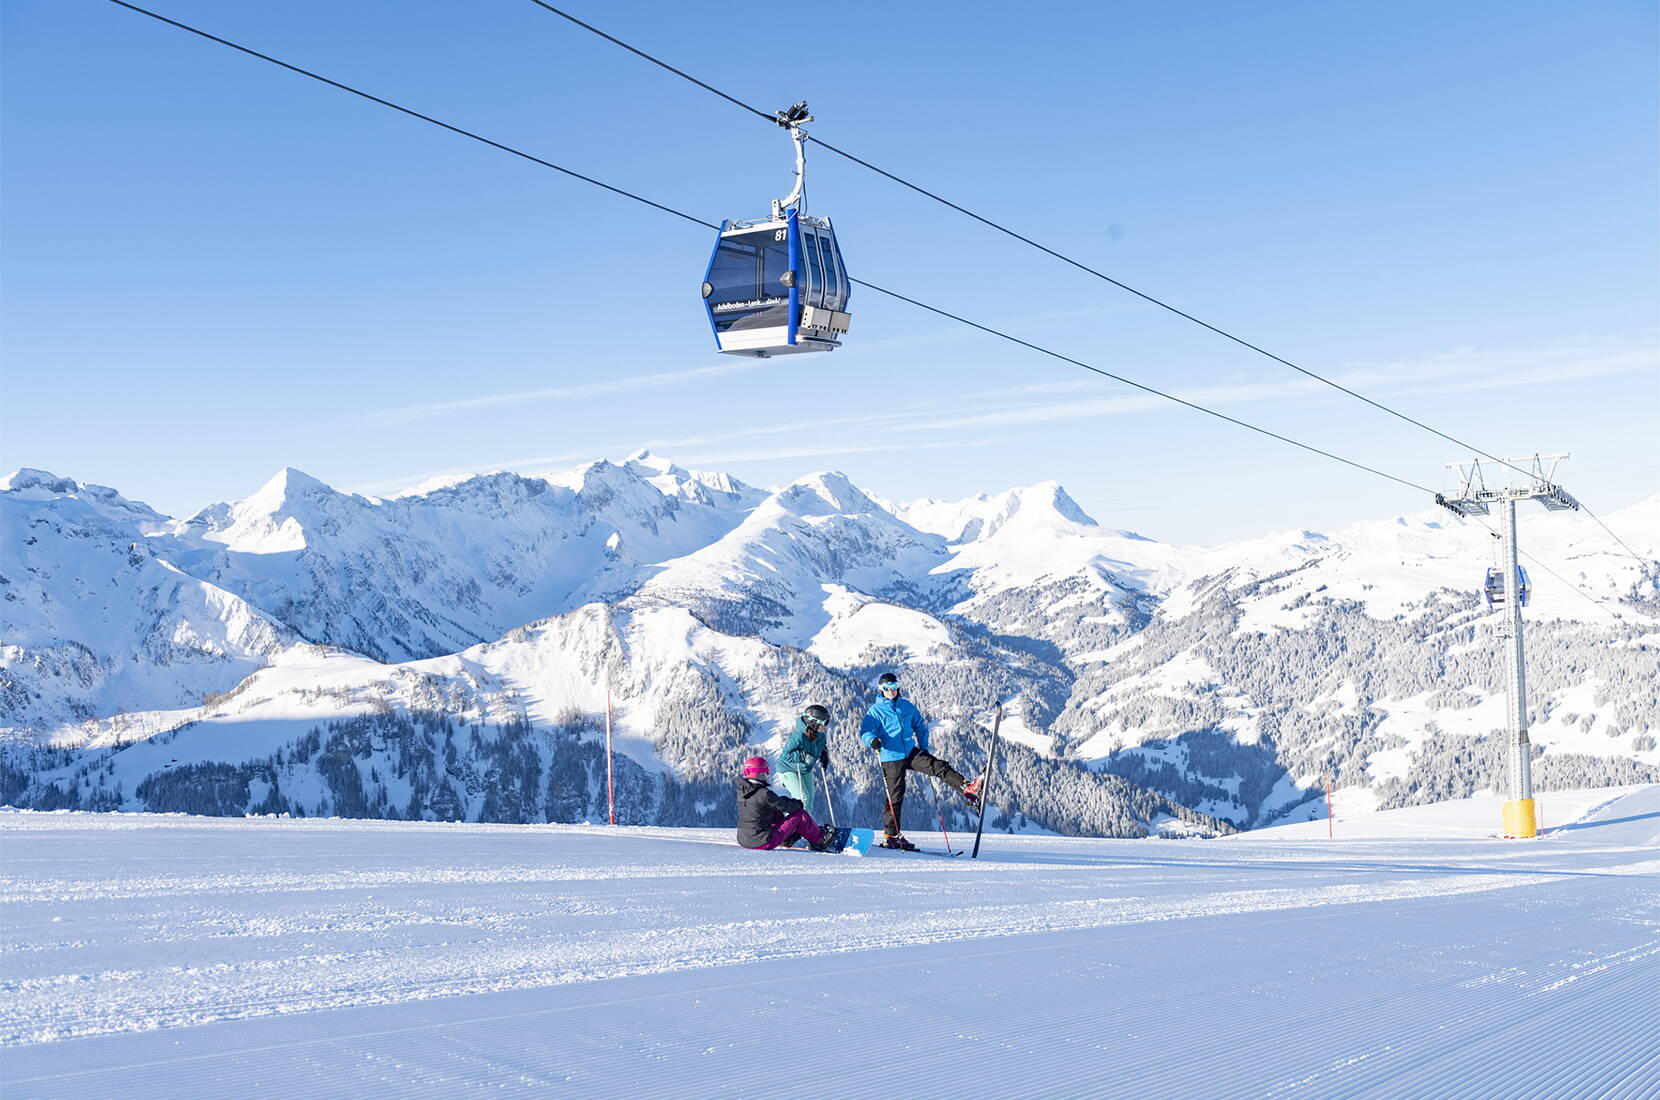 Familienausflug Adelboden-Lenk. Die Skiregion Adelboden-Lenk ist eines der attraktivsten Ski- und Snowboardgebiete der Schweiz. Für viel Charme und Gastfreundschaft sorgen die zahlreichen und bestens gepflegten Berggasthäuser, urchigen Skihütten oder trendigen Schneebars.